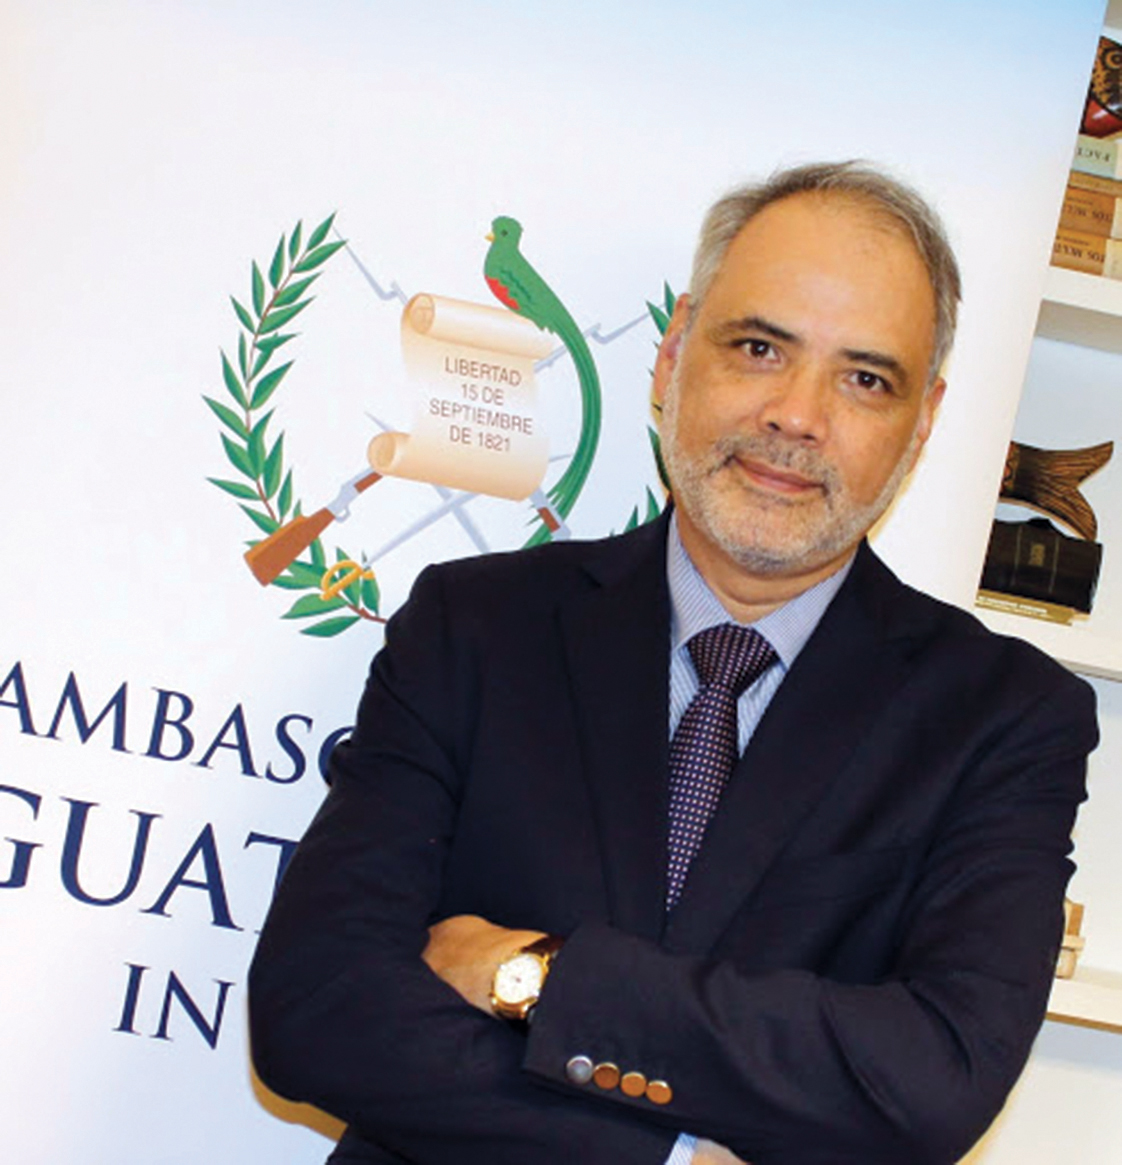 Luis Carranza, Ambasciatore del Guatemala in Italia